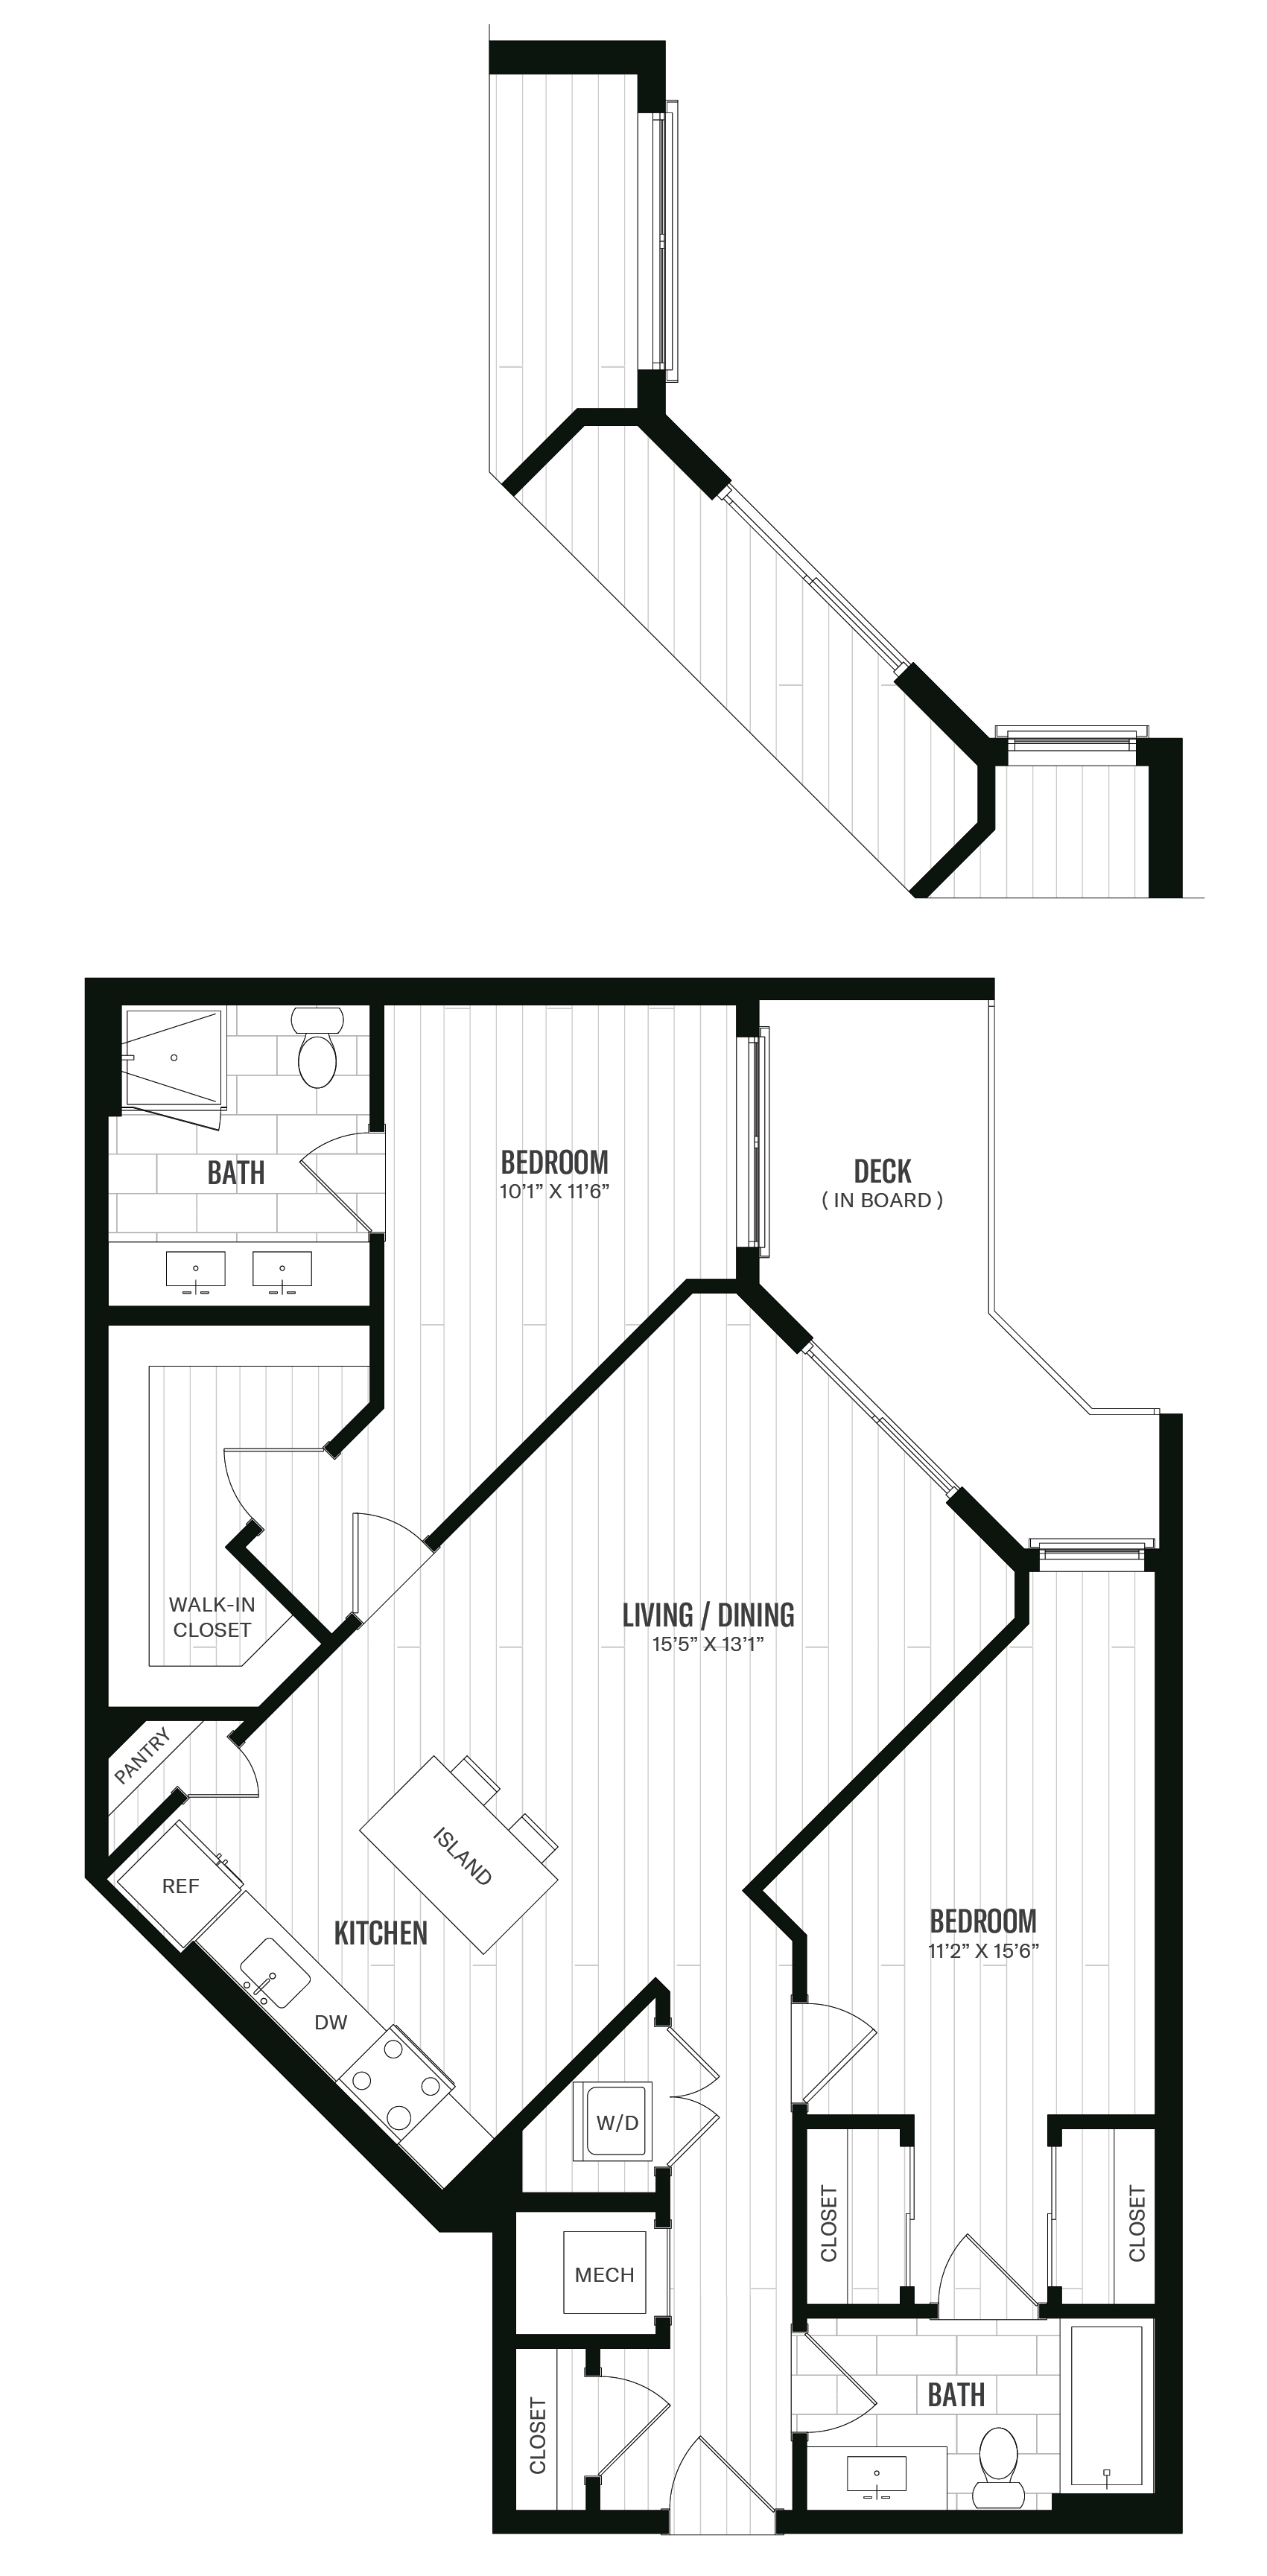 Floorplan image of unit 357